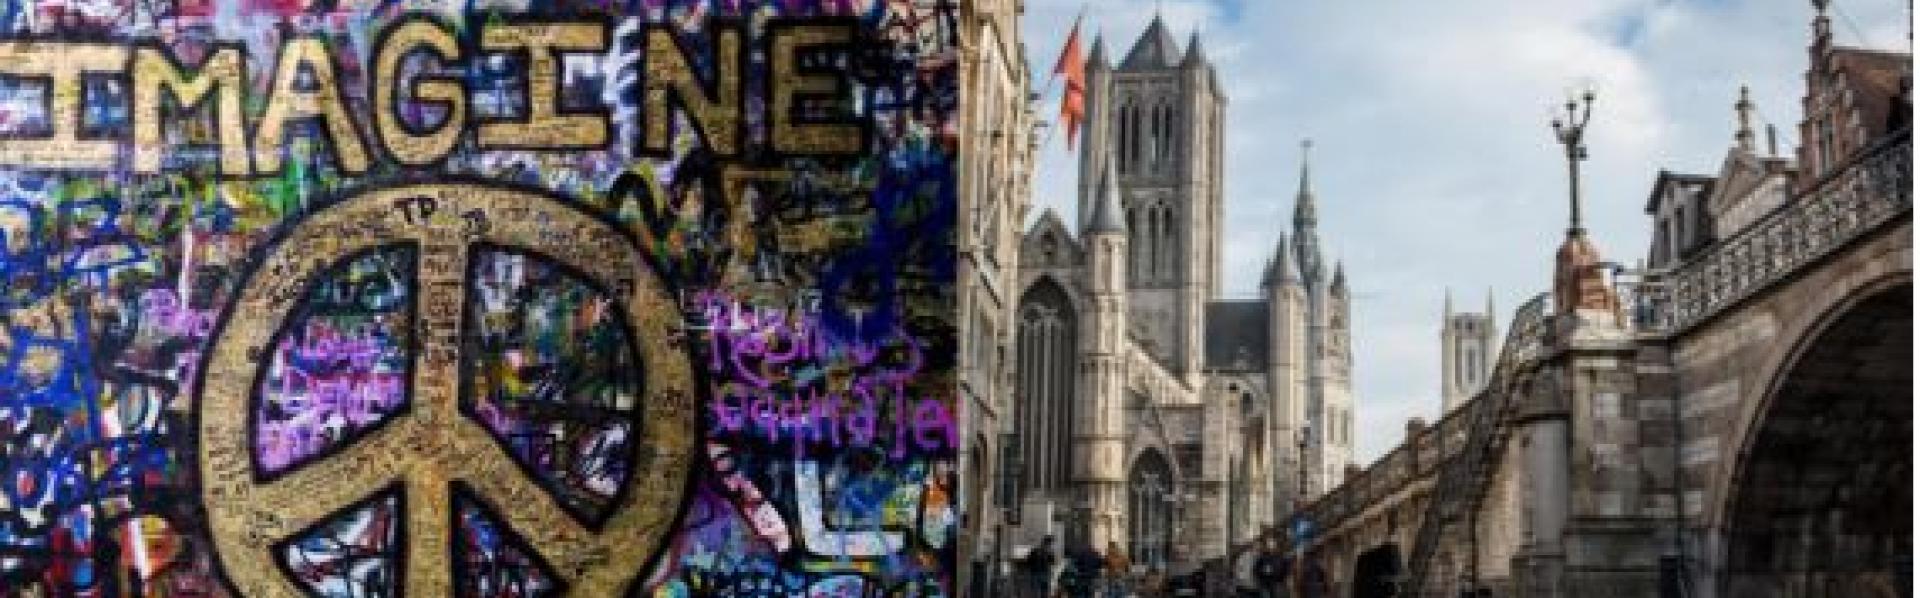 Lennon wall met graffiti Imagine Peace en zich op binnenstad Gent